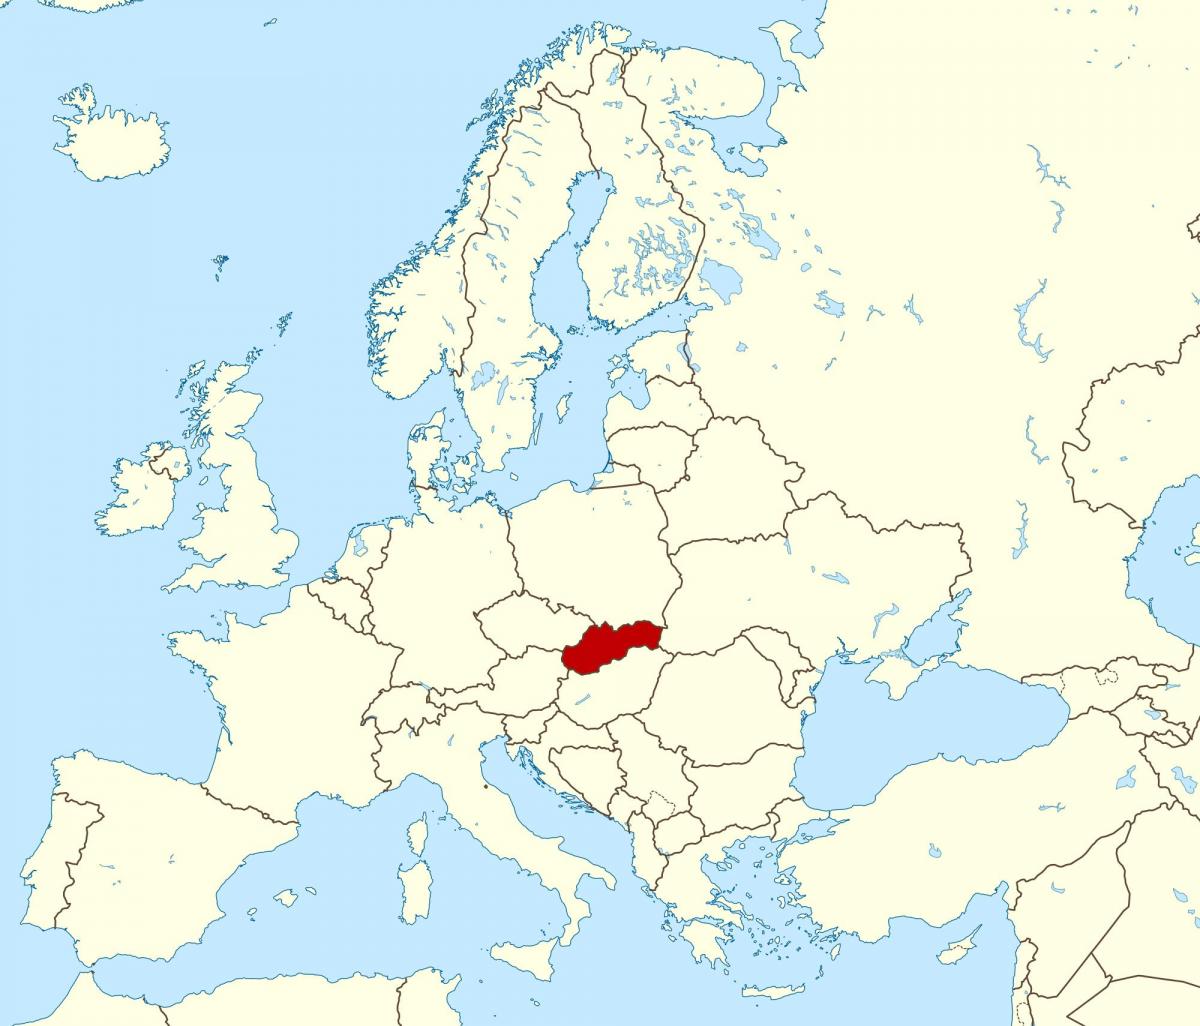 แผนที่ของสโลวาเกียนแผนที่ยุโรป